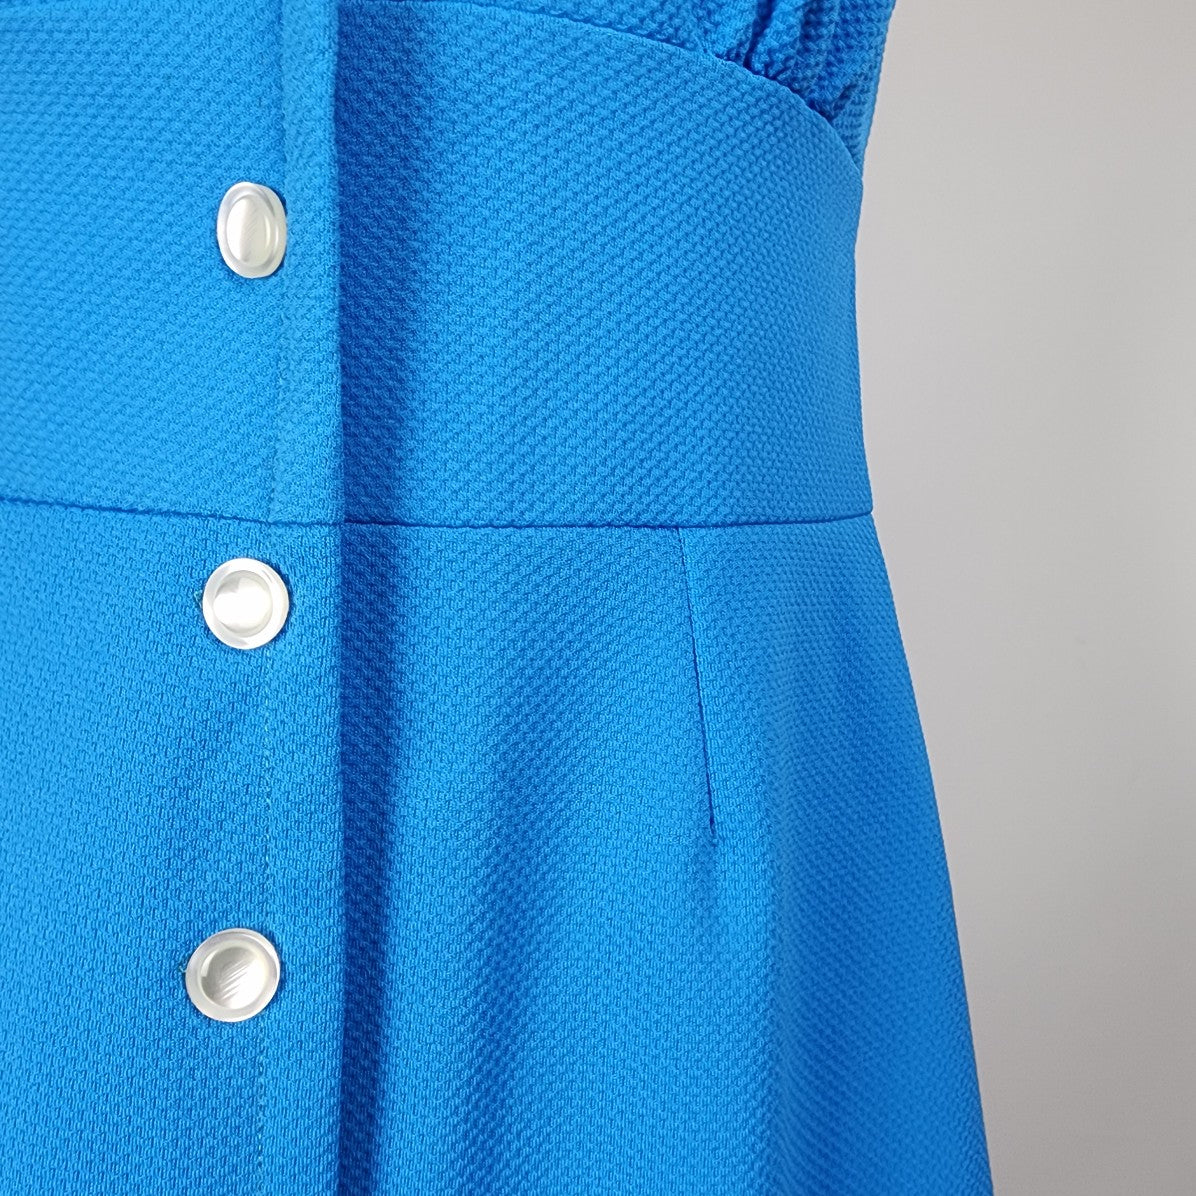 Vintage Blue Button Up A Line Dress Size S/M